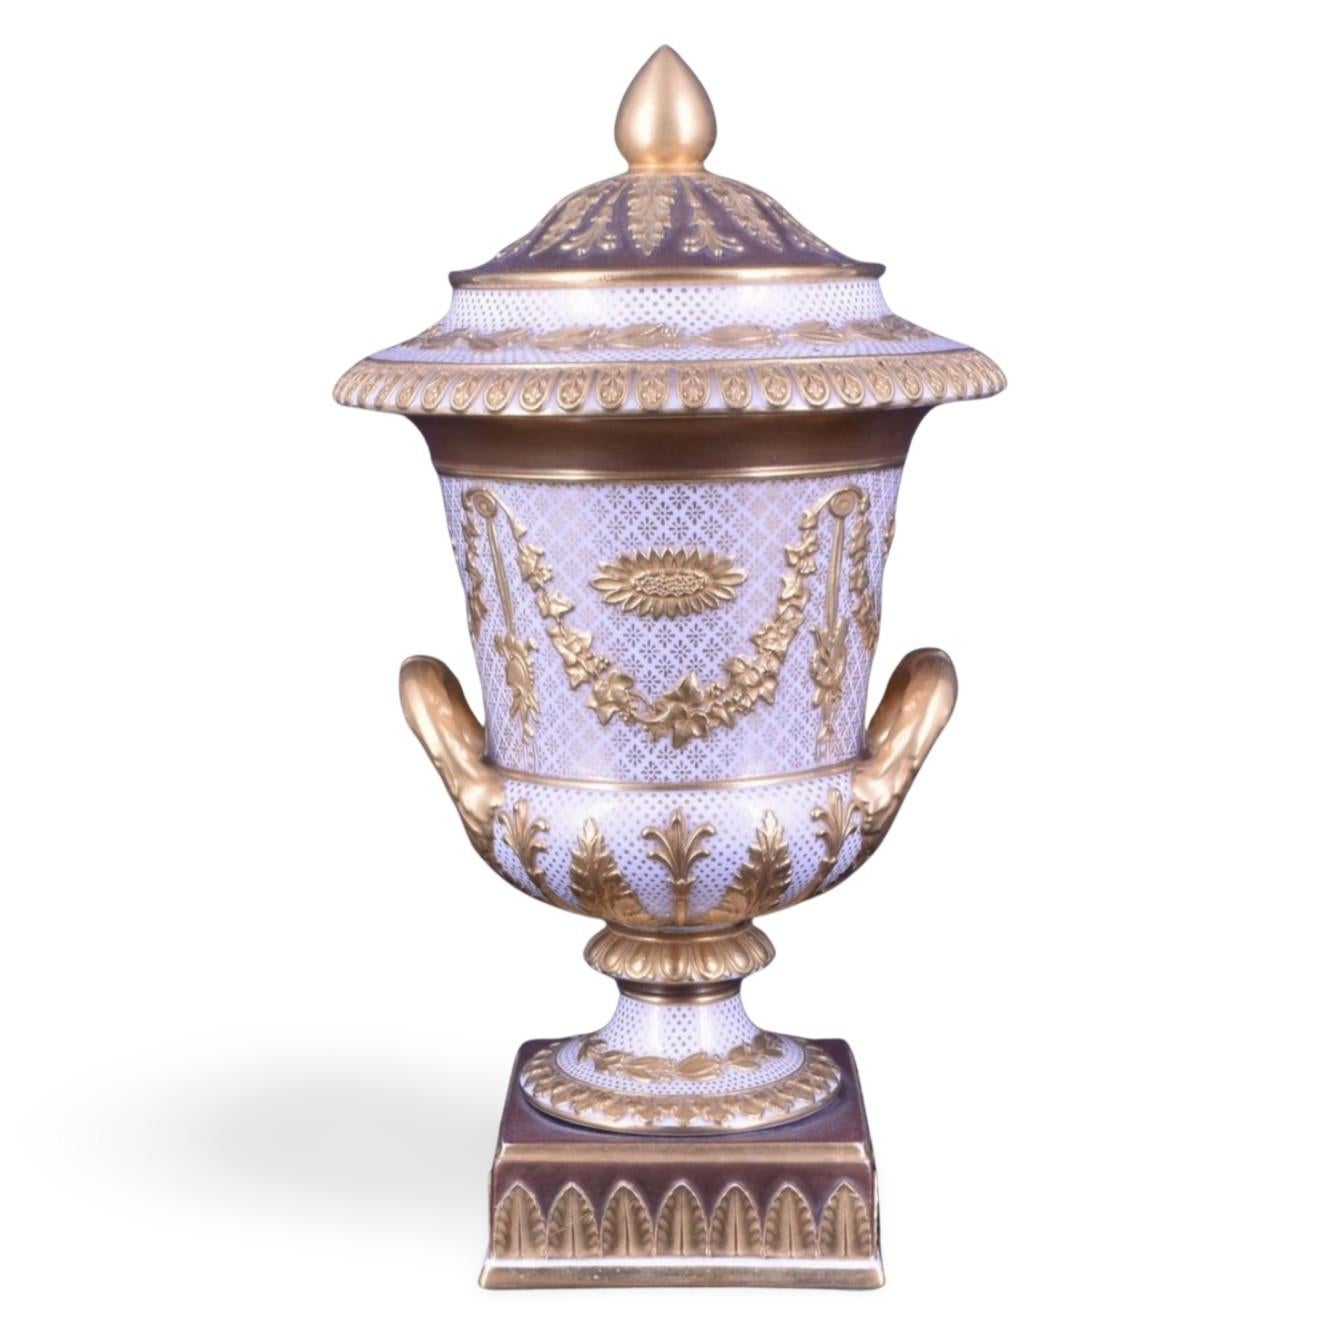 Eine Campana-Vase aus weißer und vergoldeter Victoriaware. Victoriaware war eine Mischung aus Parian- und Cremeware, aus der diese außergewöhnlichen Vasen mit Dekorationen im Stil von Sèvres auf klassischen Formen hergestellt wurden. Die Vase ist